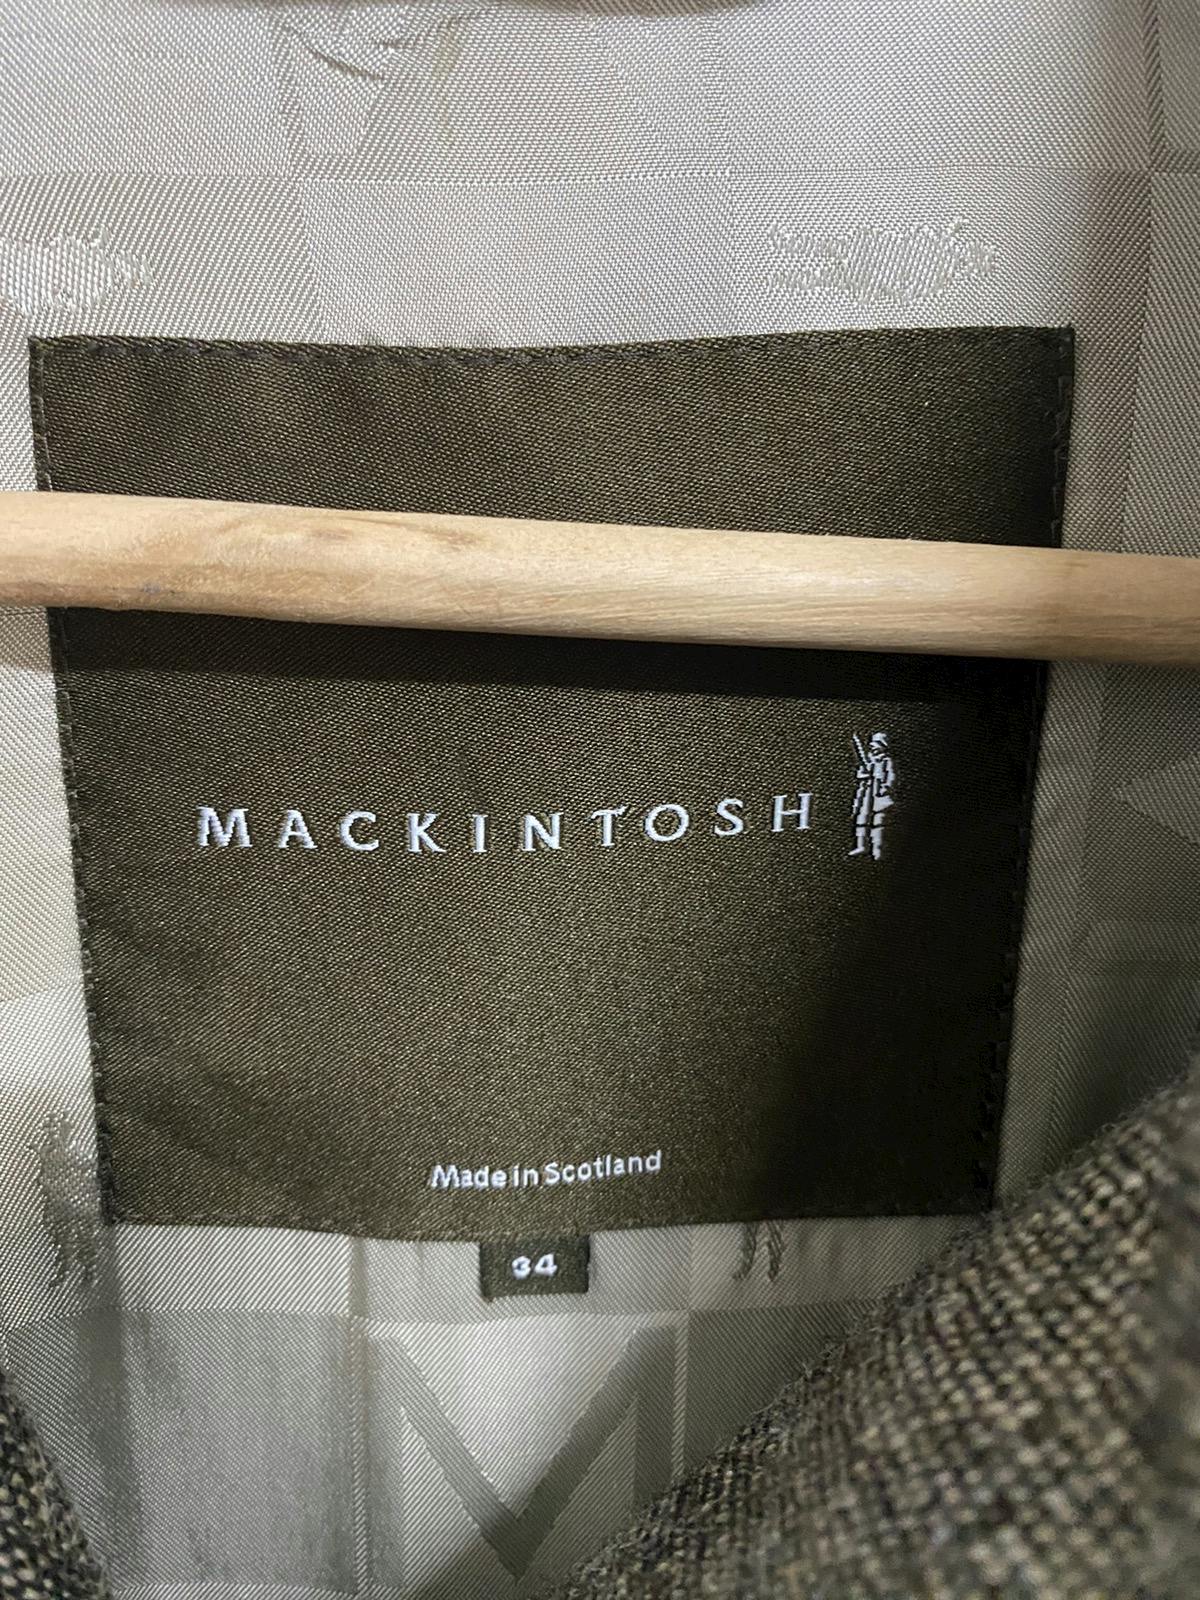 Mackintosh Herringbone Wool Coat Made in Scotland - 11